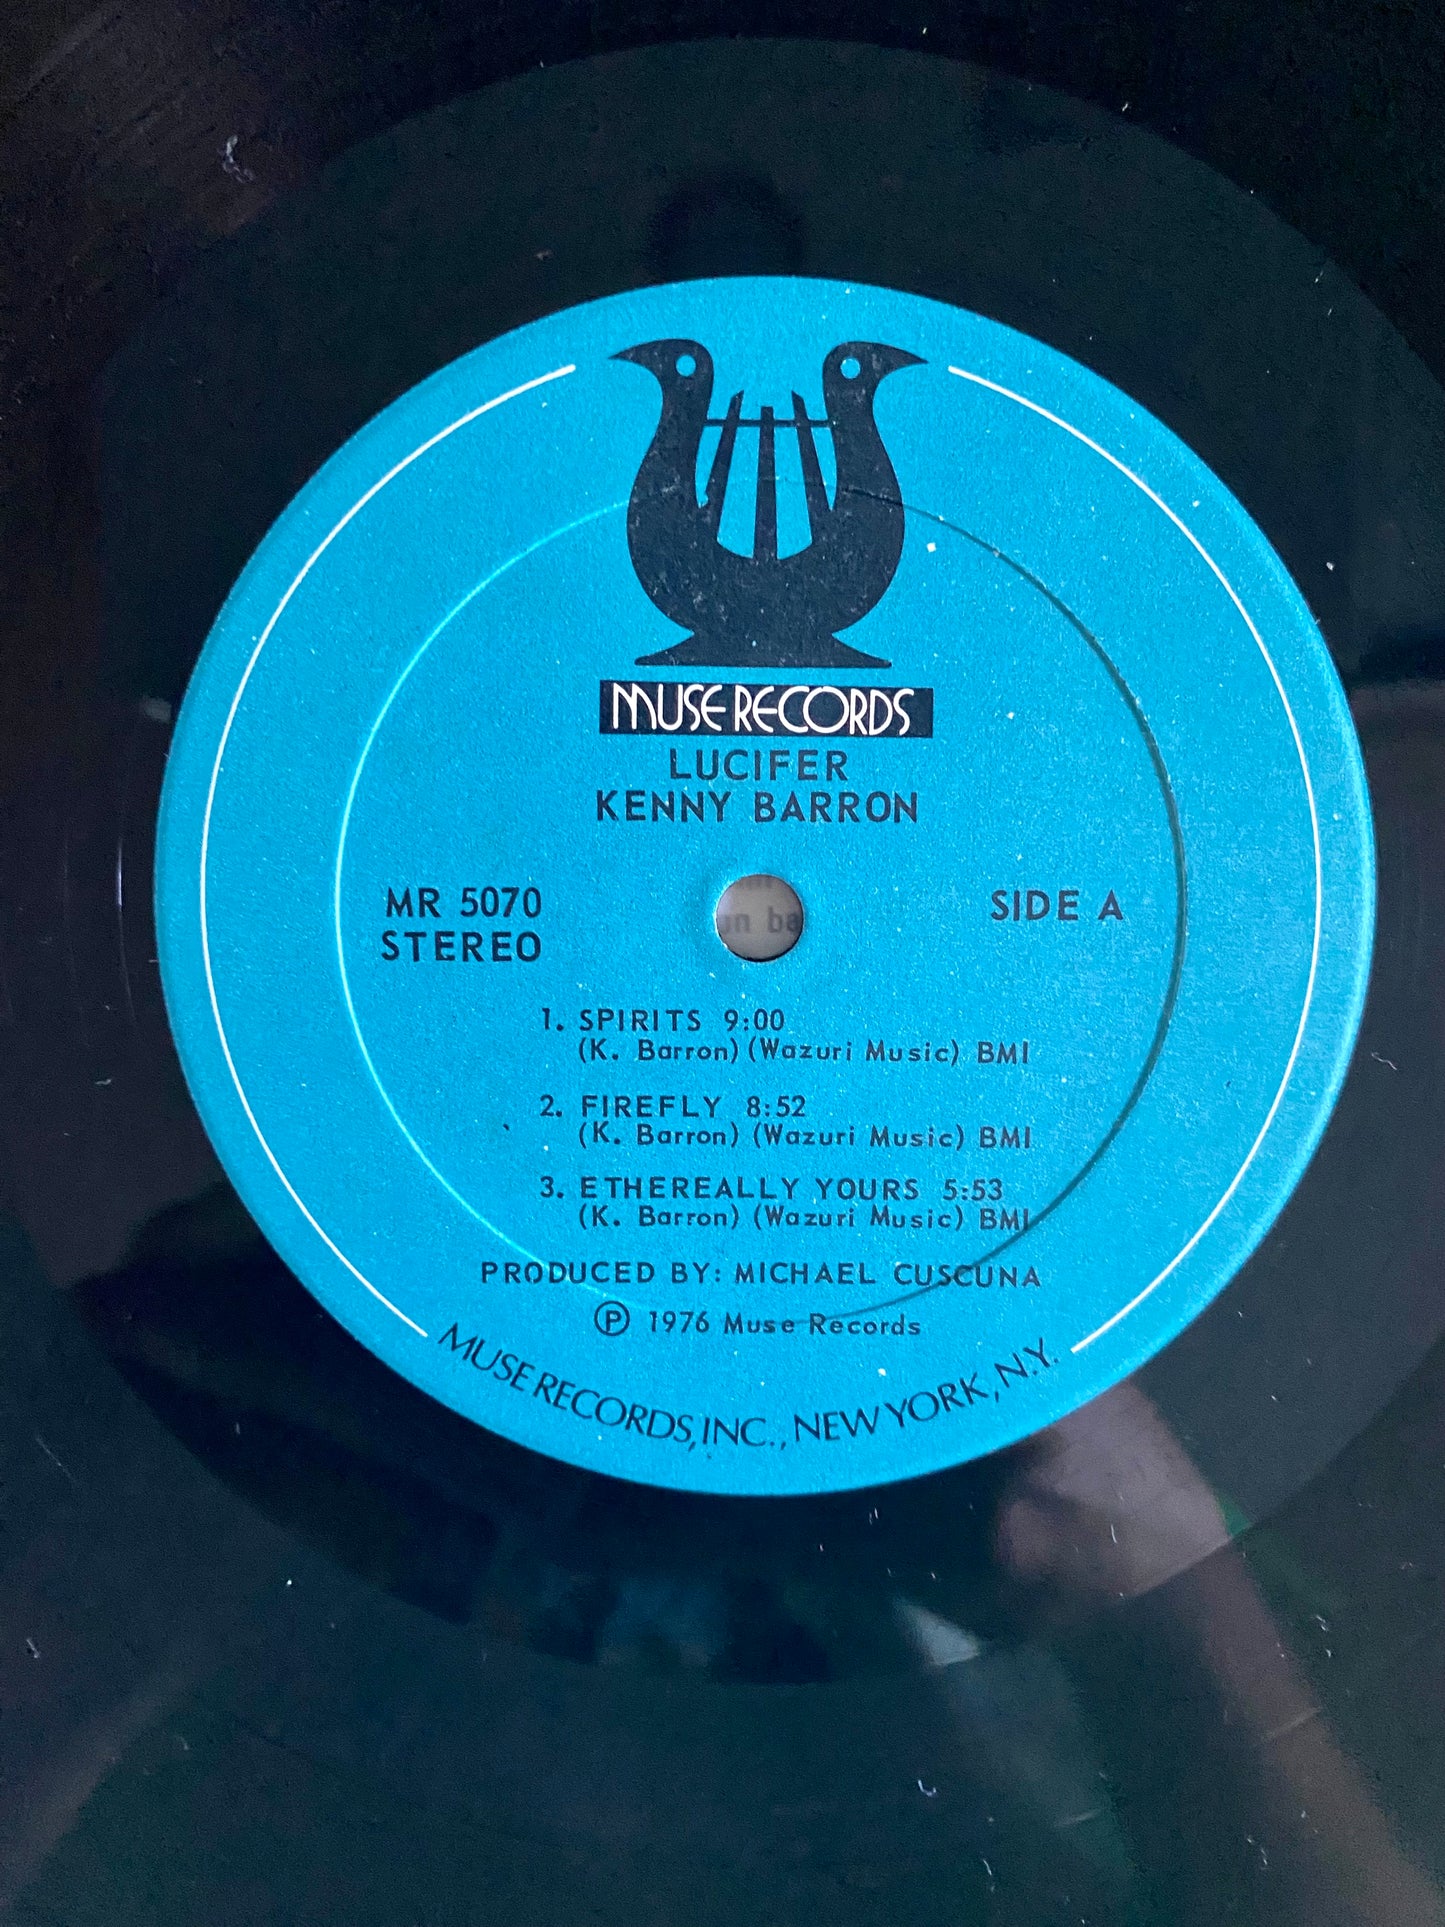 Kenny Barron - Lucifer (LP, Album). JAZZ